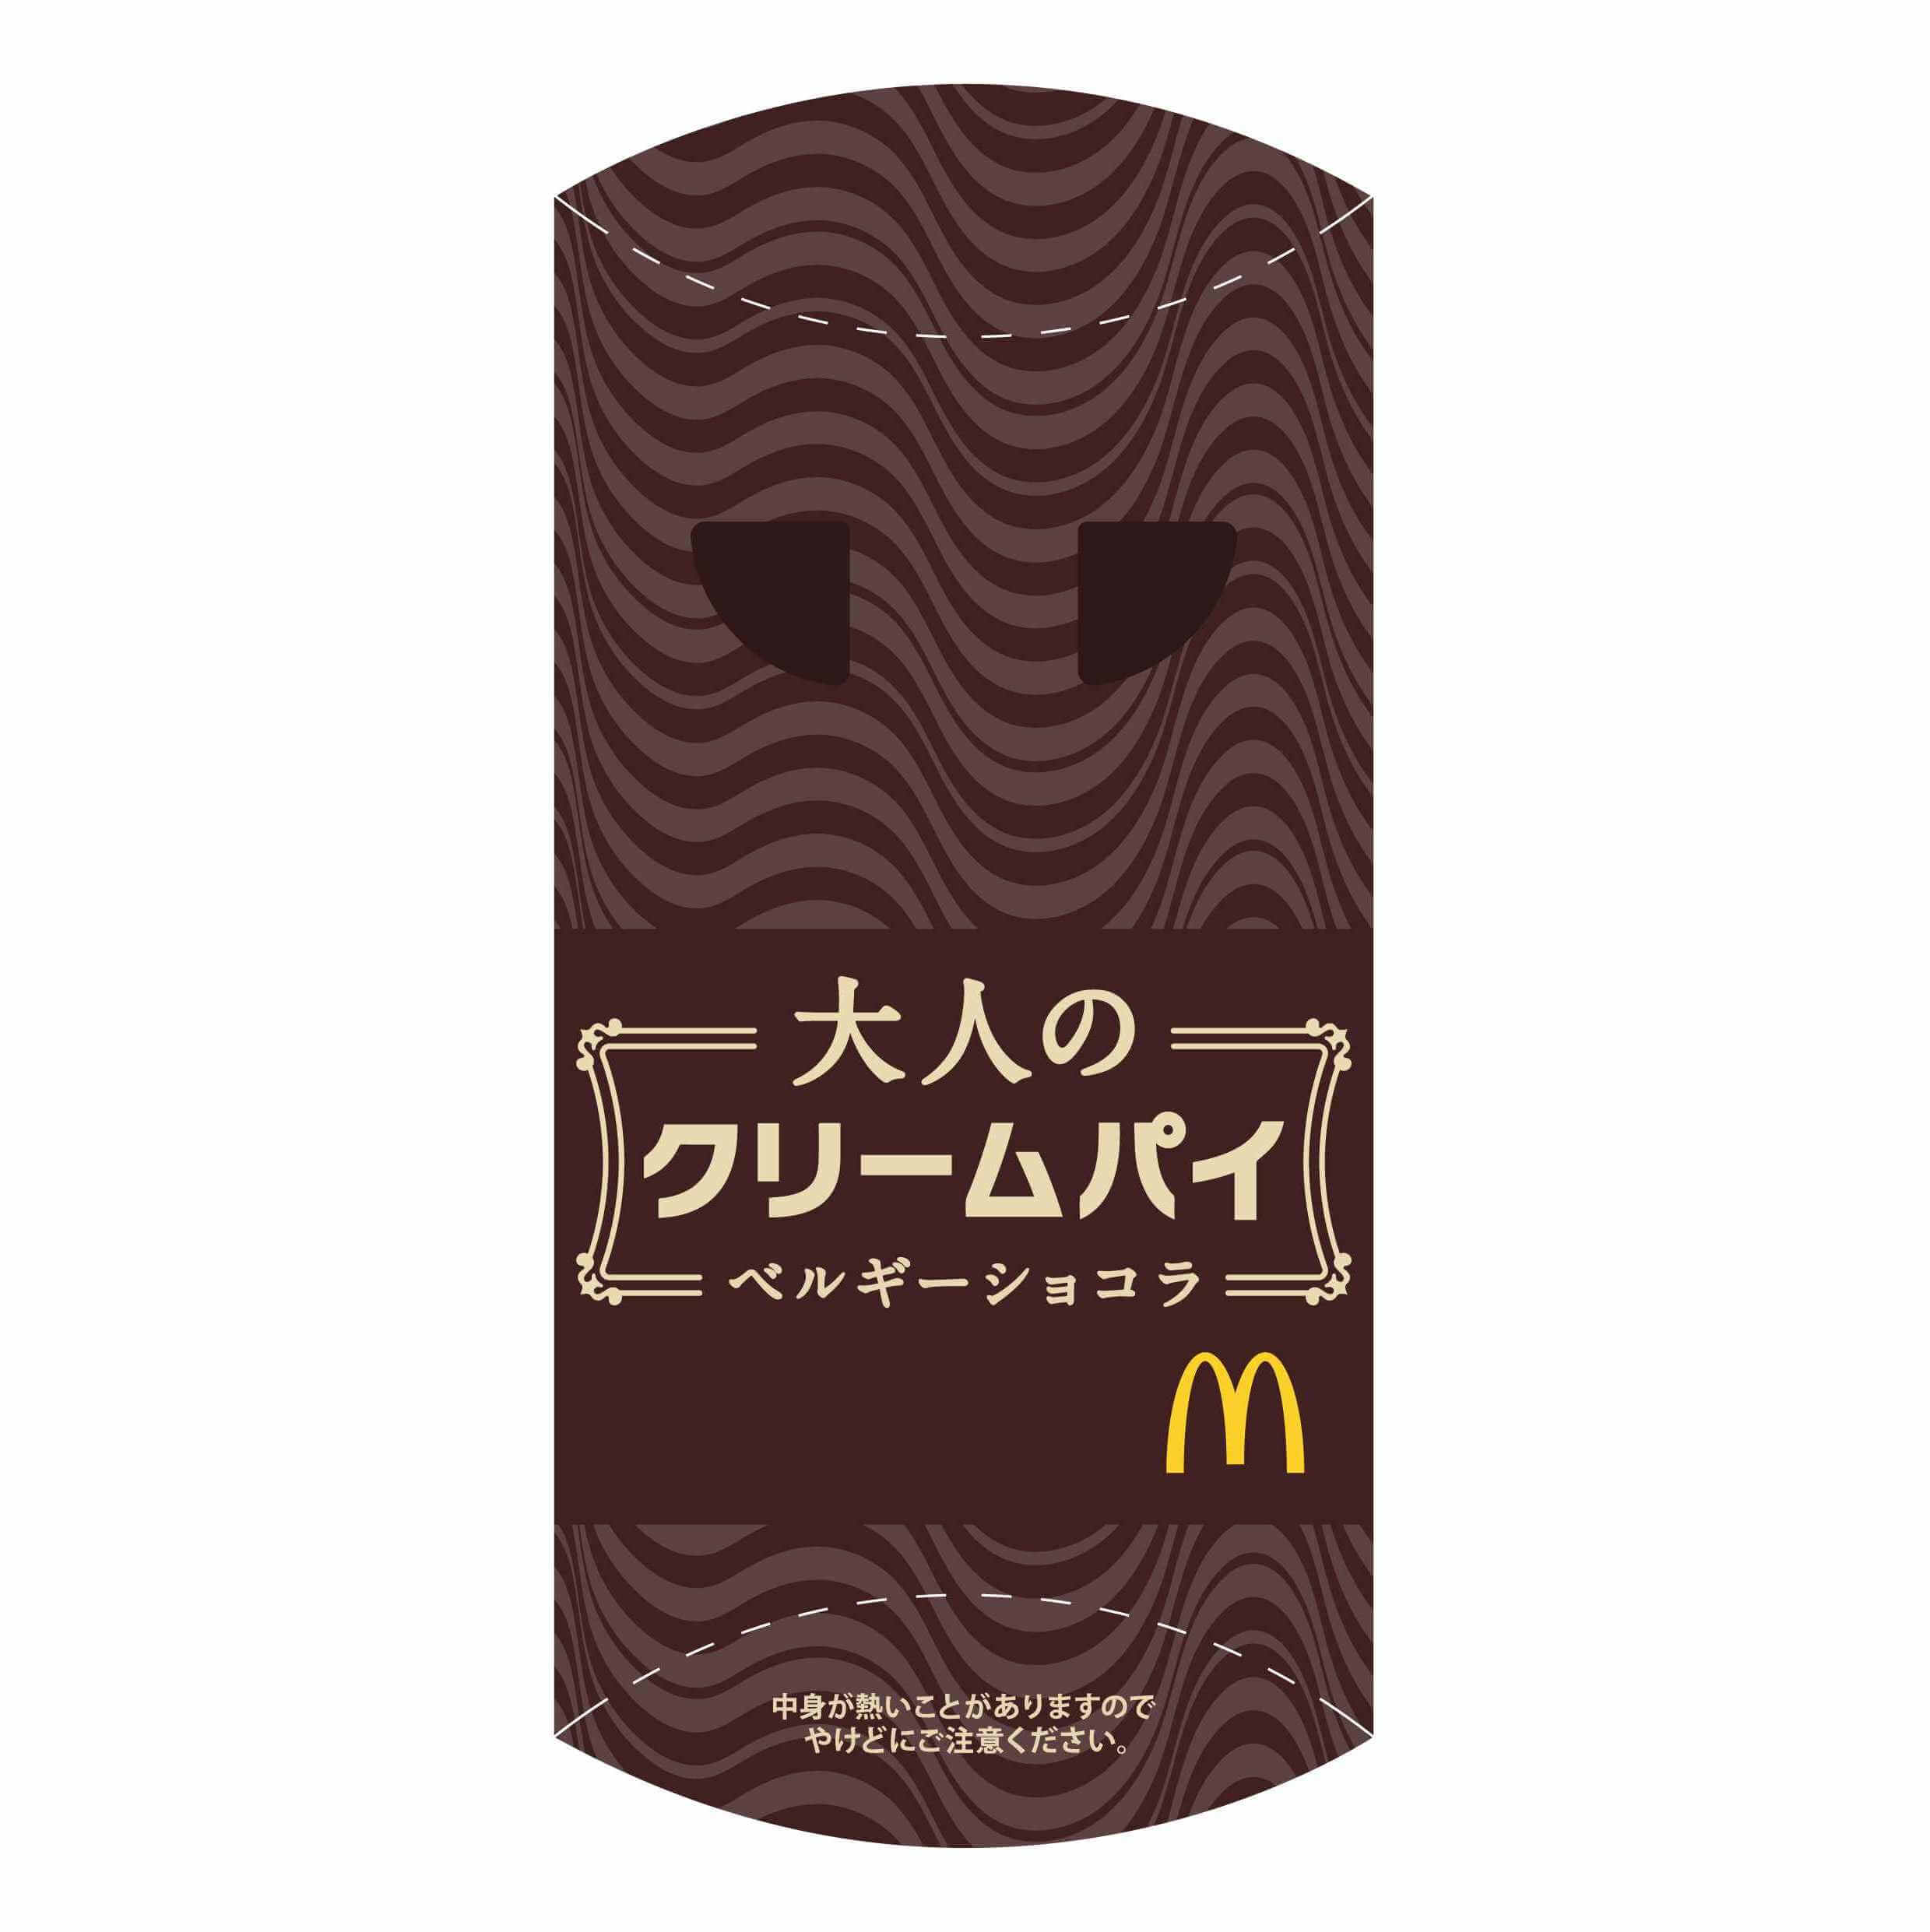 マクドナルド McDonald 麥當勞 大人のパイ Pie